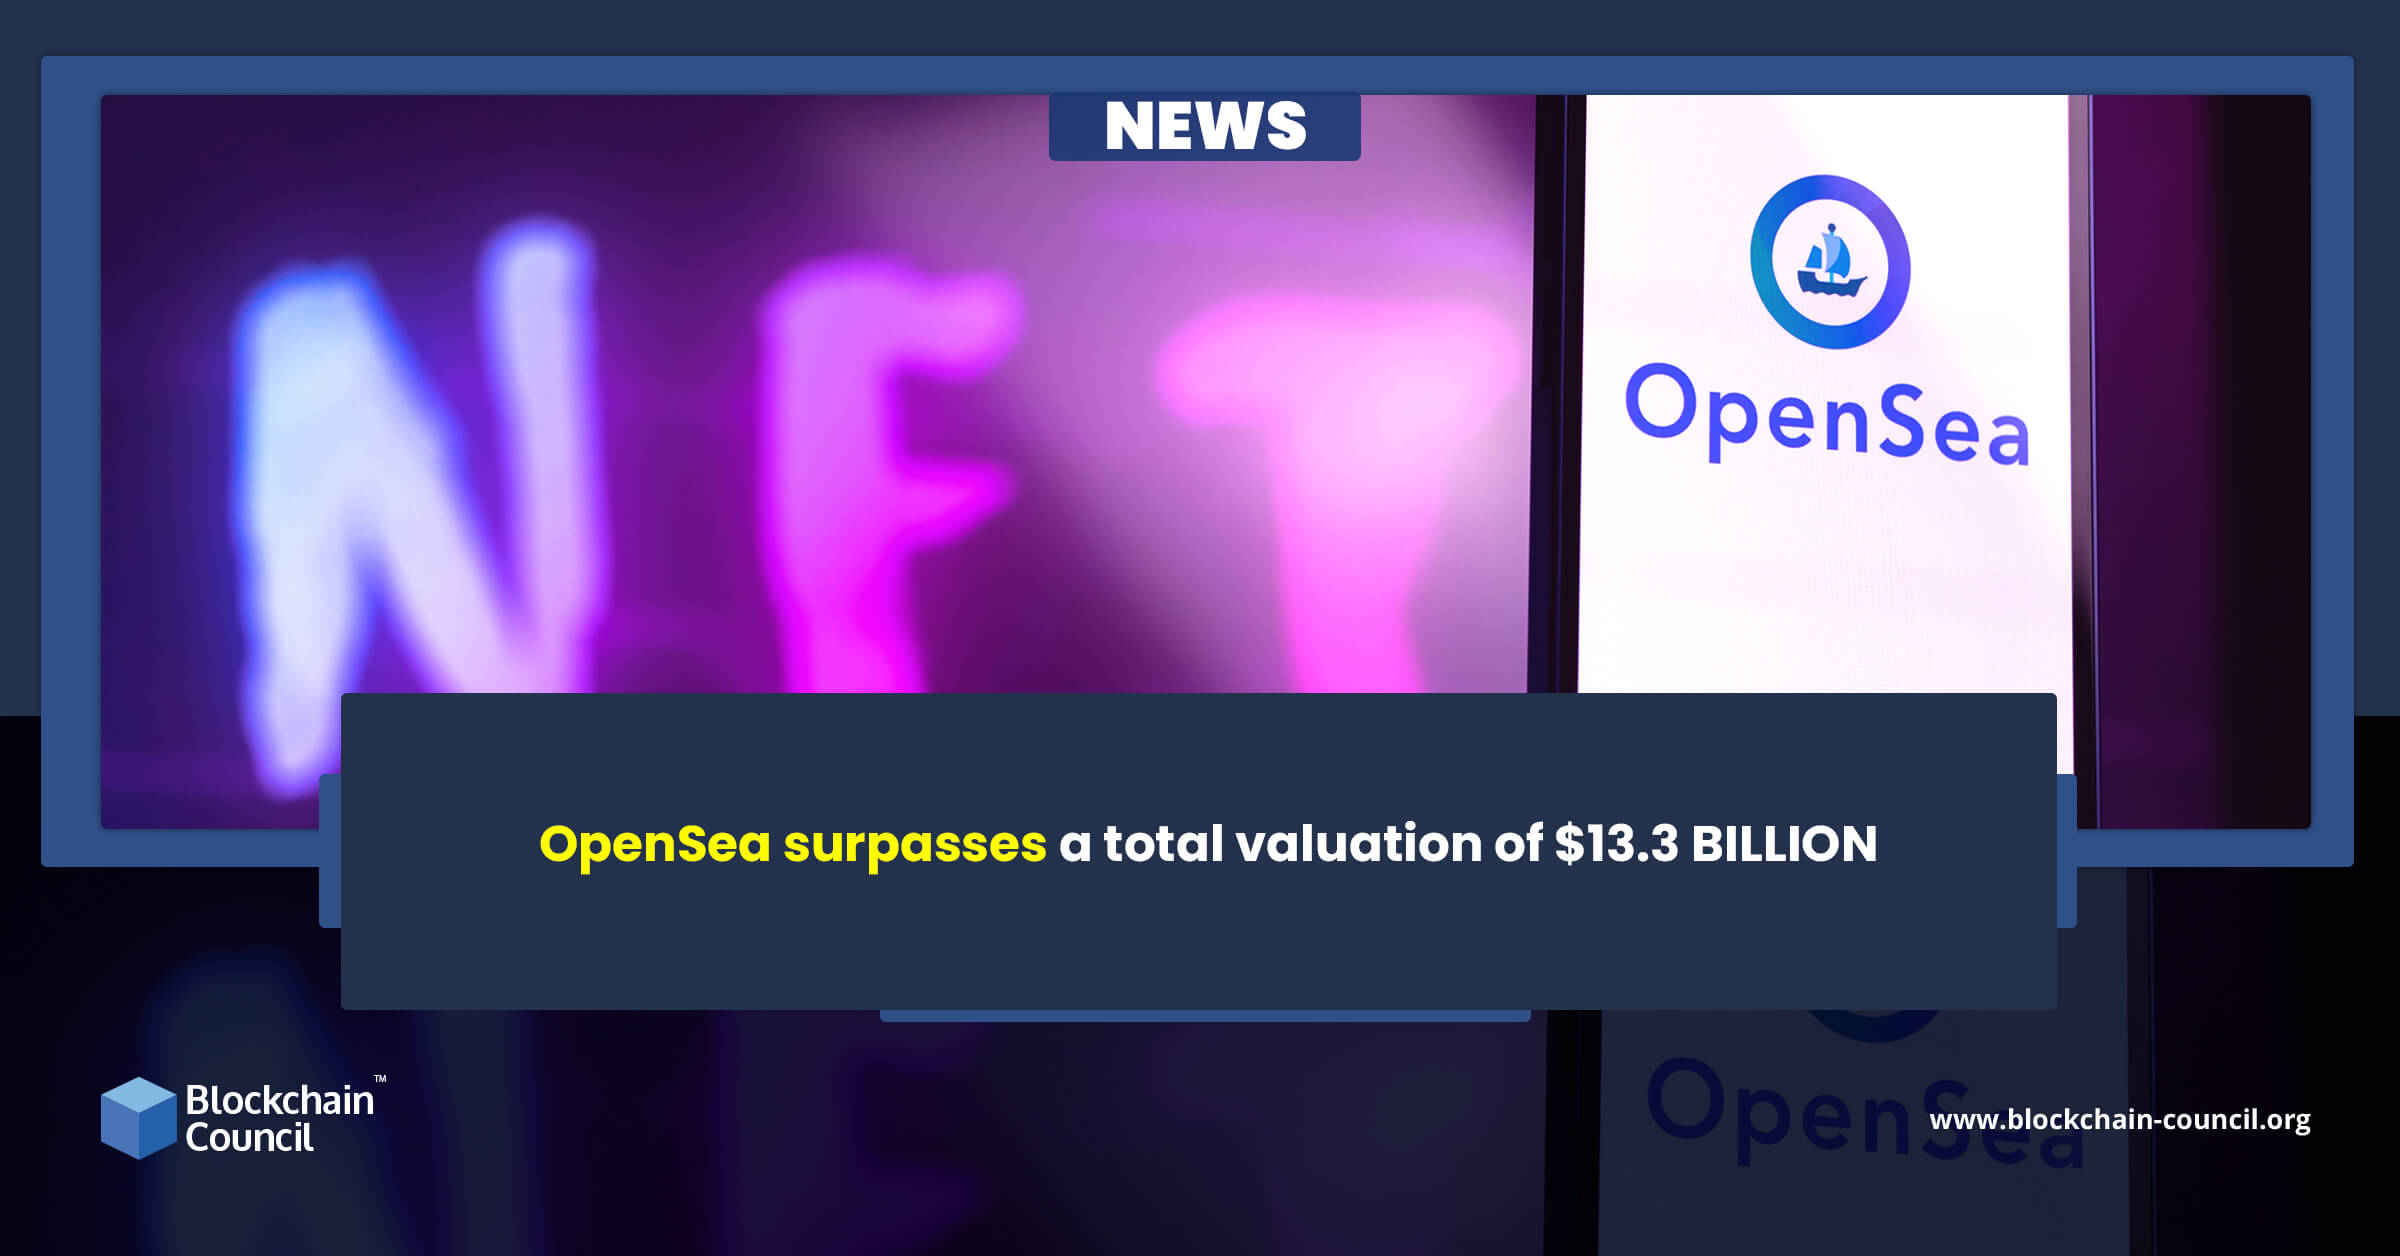 OpenSea surpasses a total valuation of $13.3 BILLION